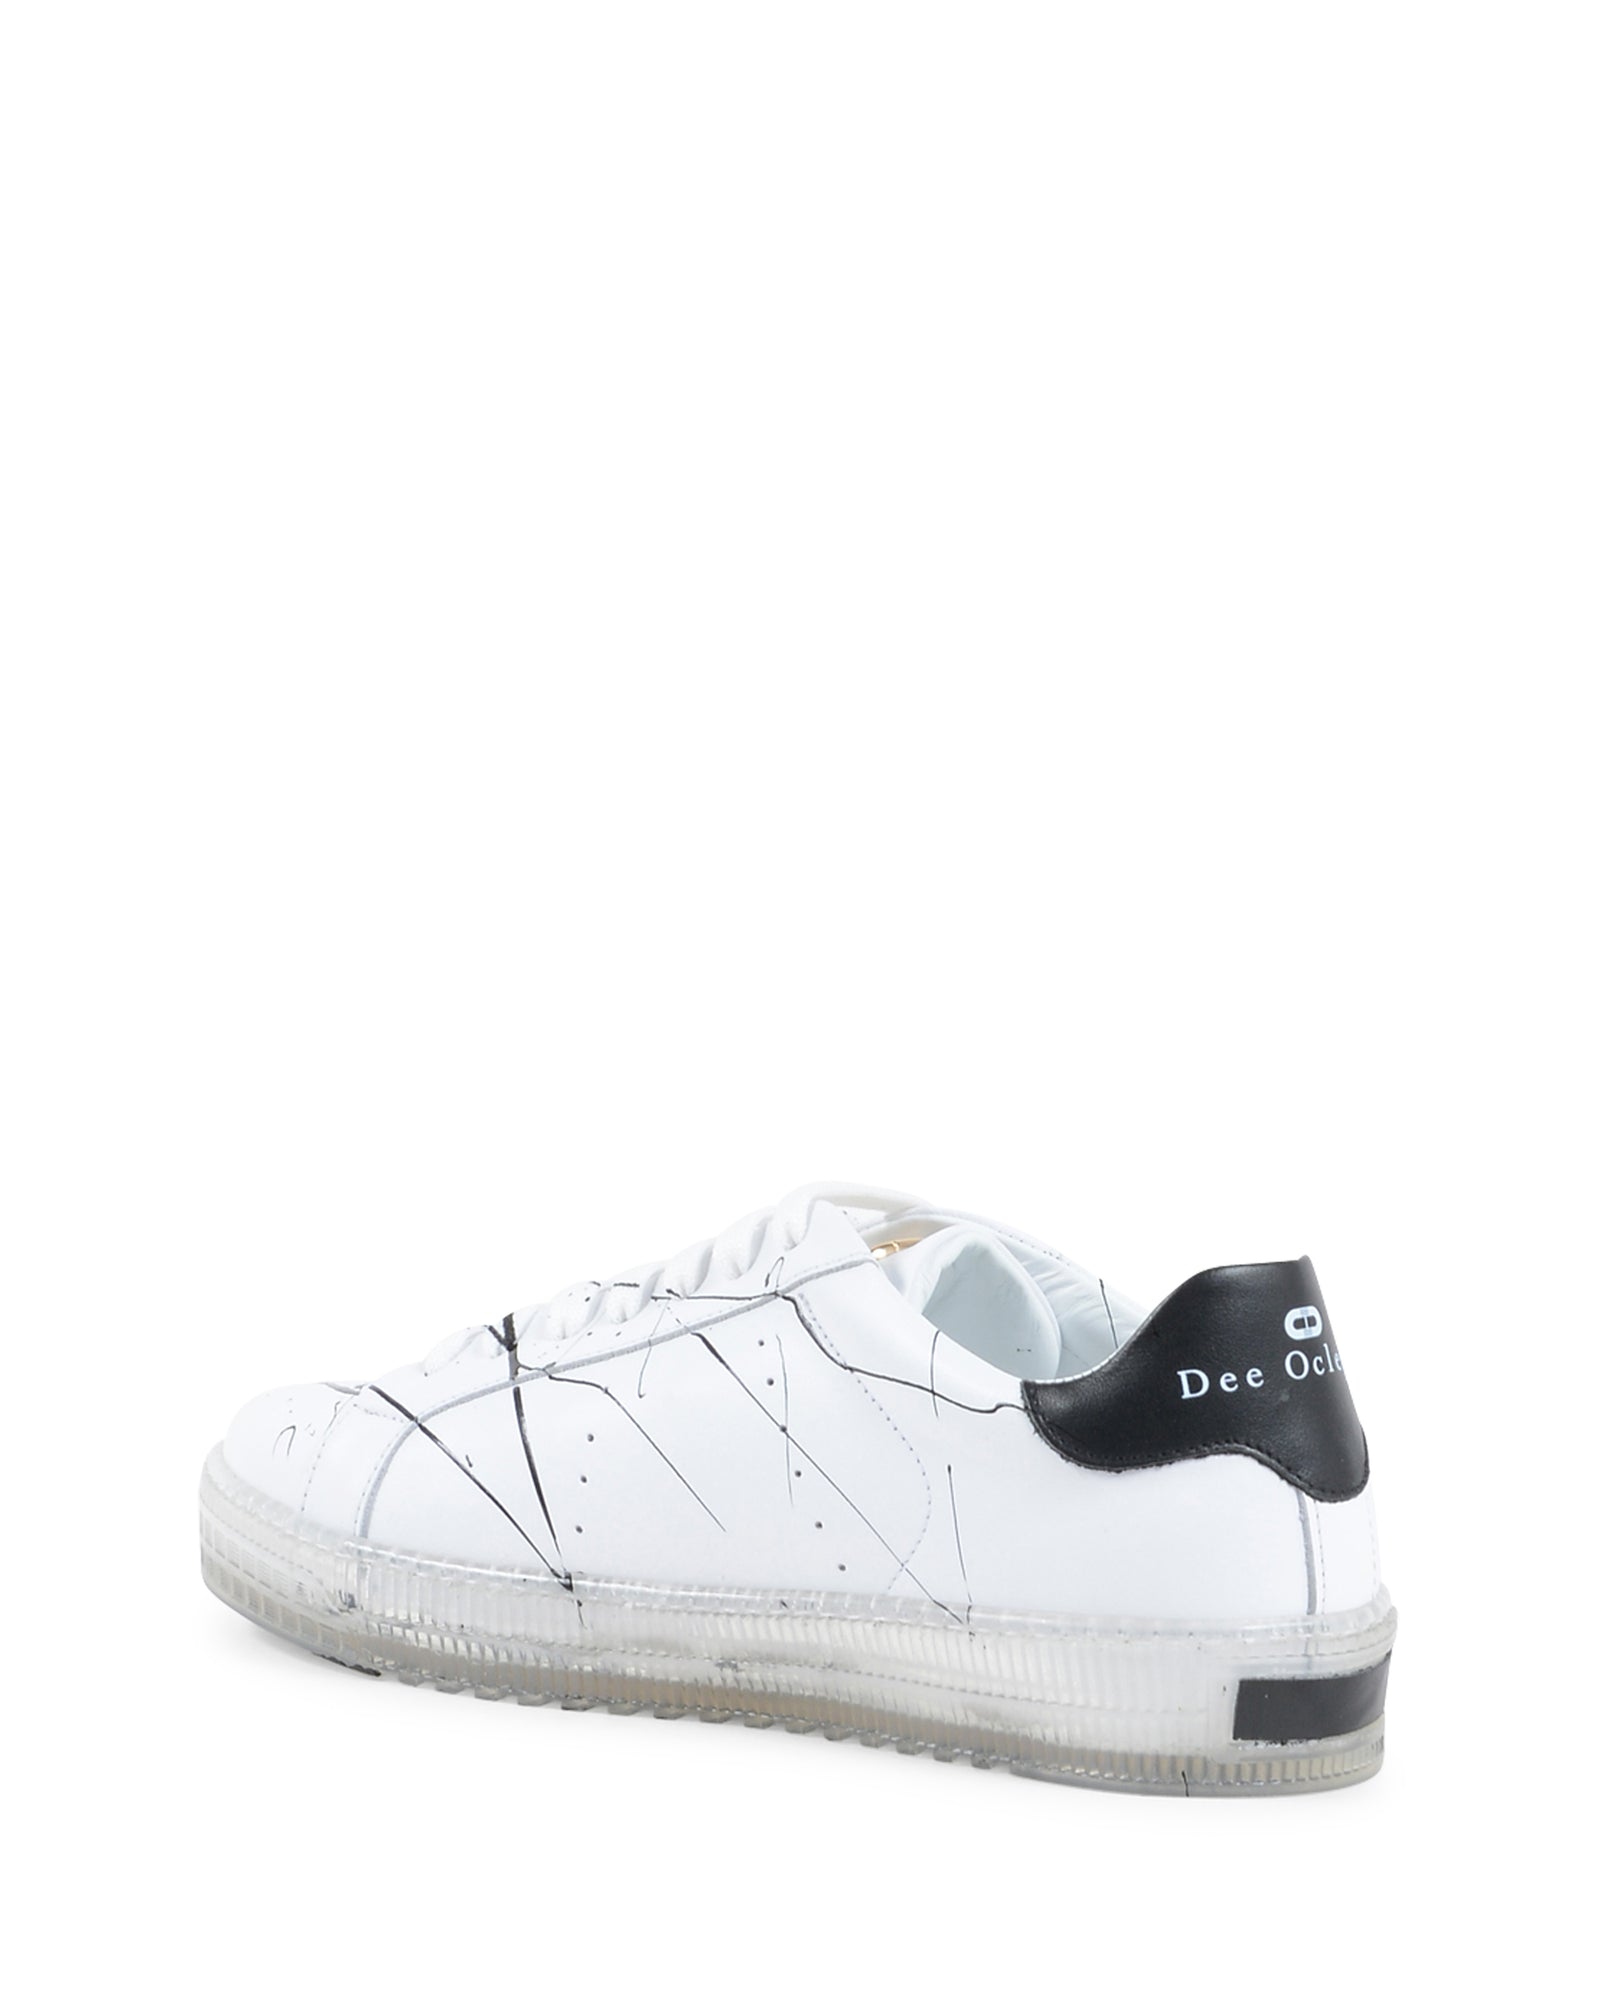 Splatter Sneaker - White Black